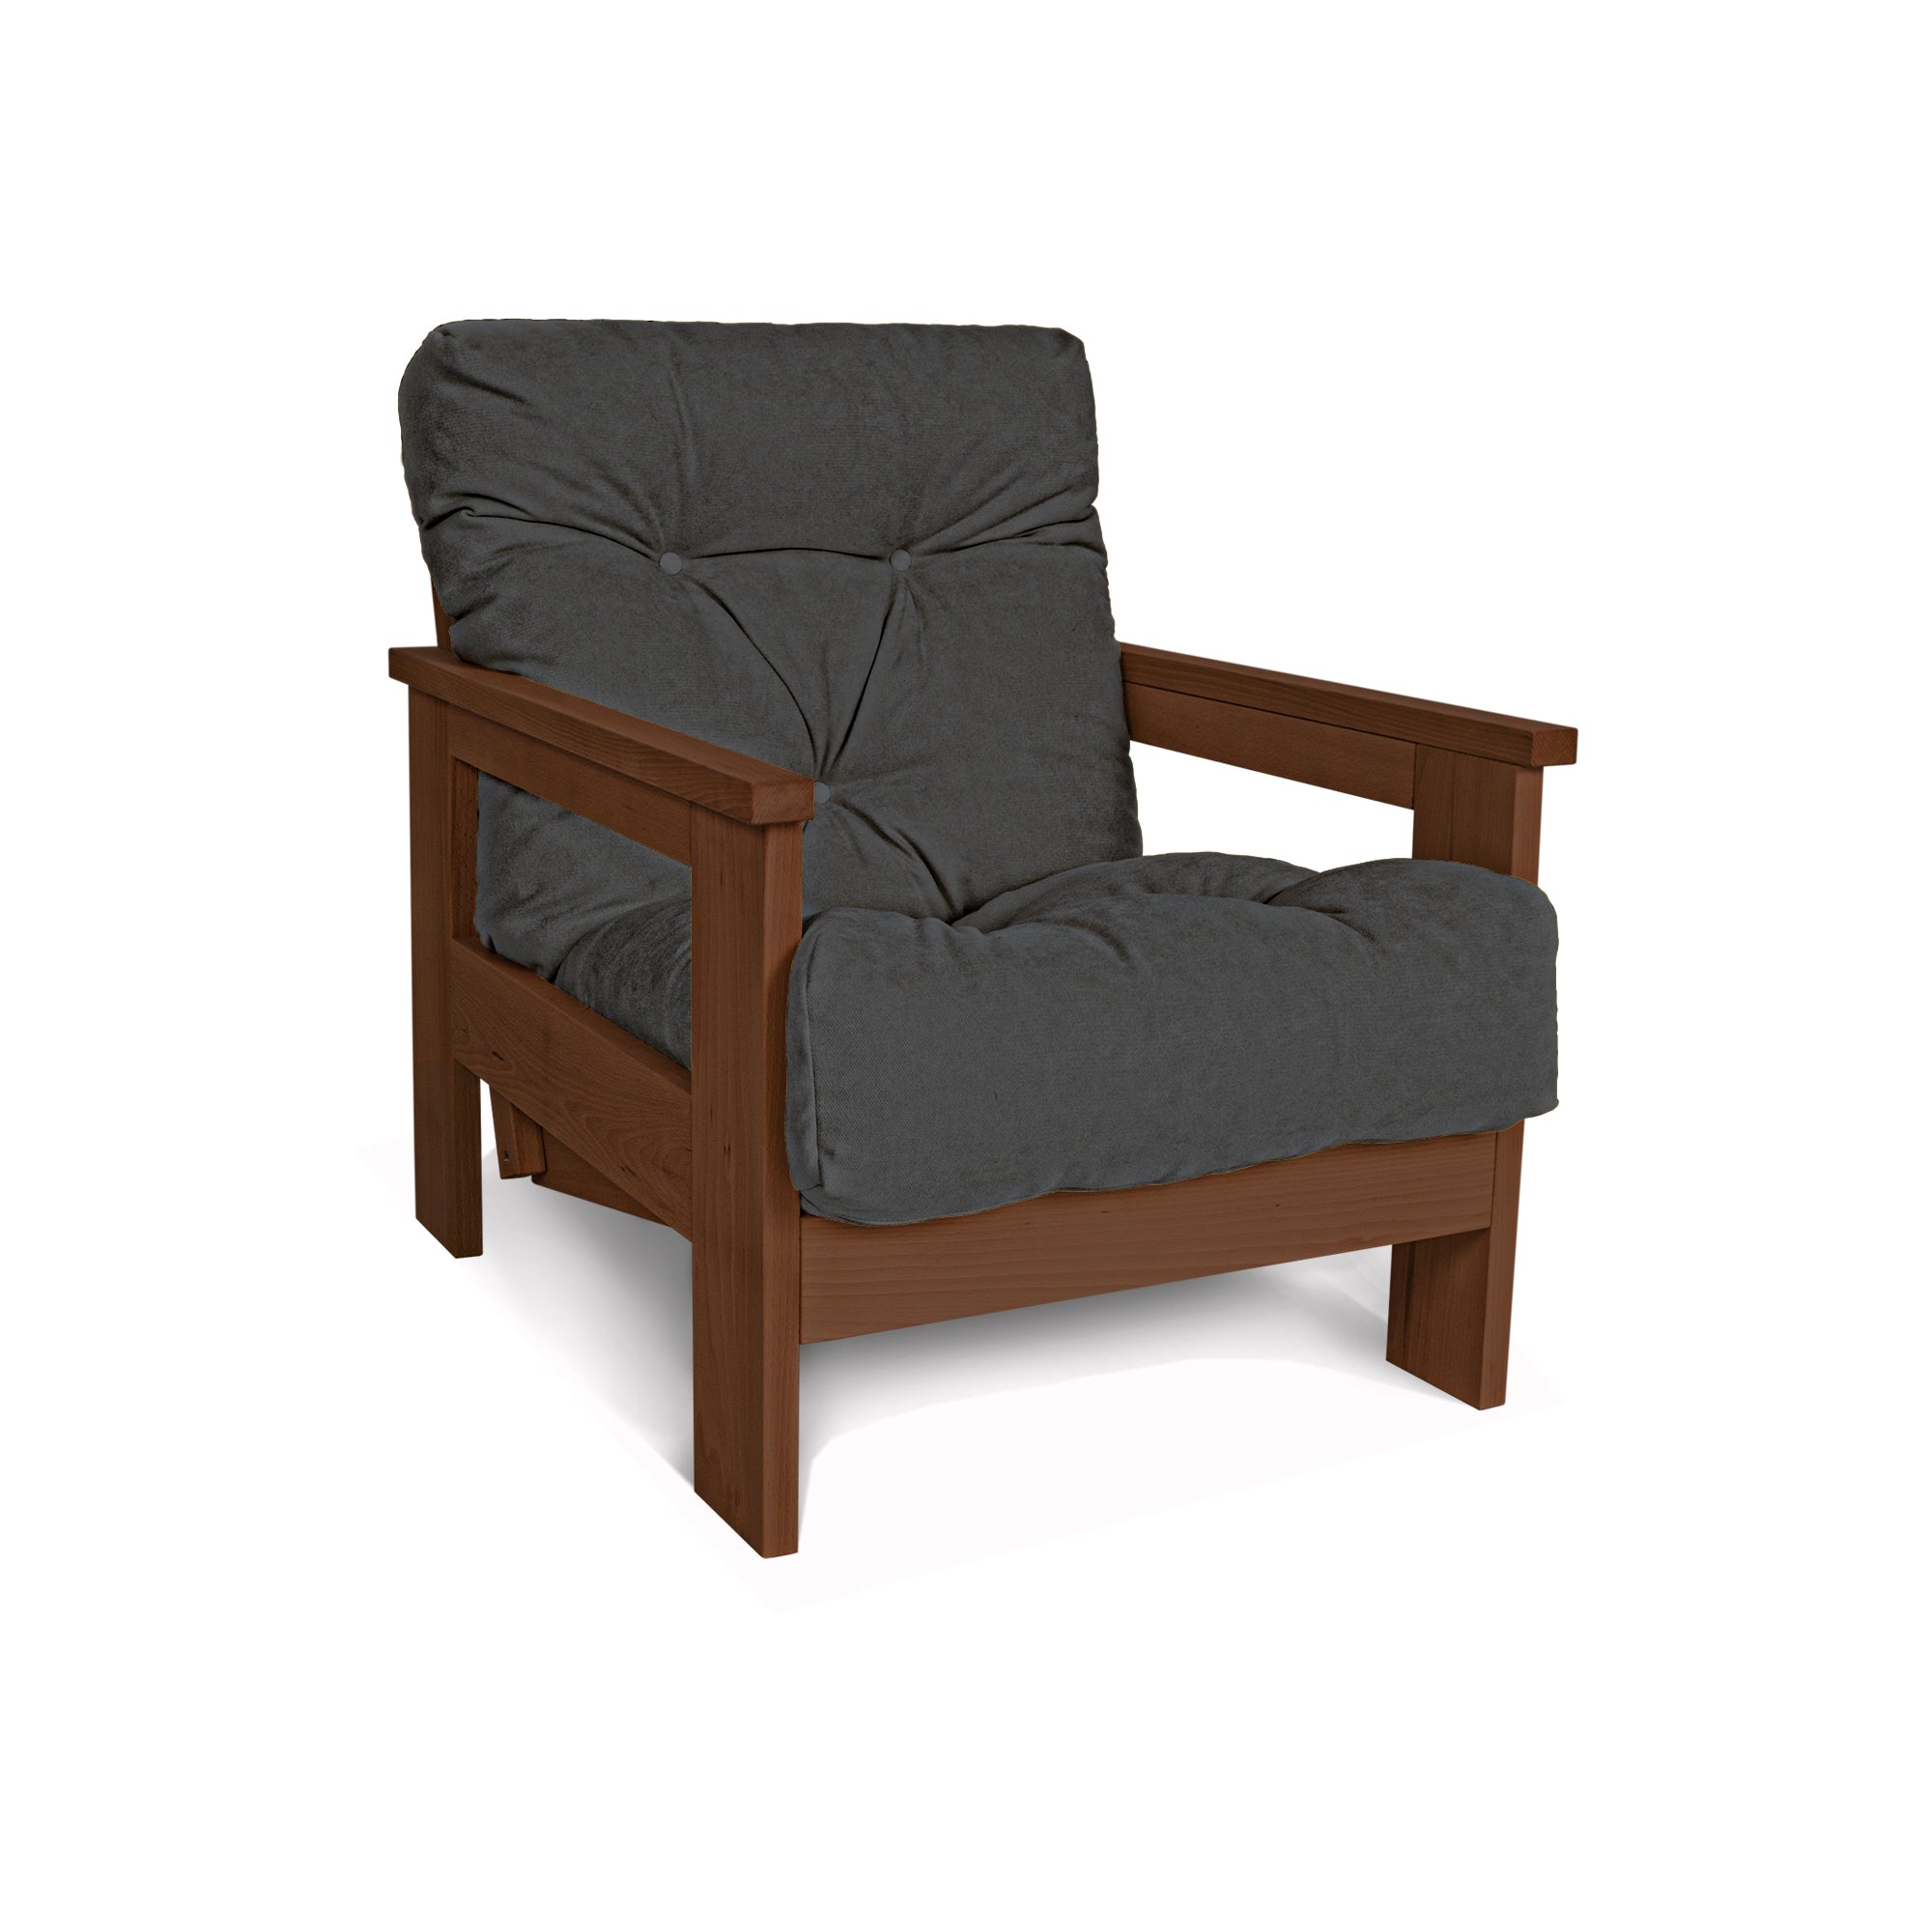 MEXICO Armchair, Beech Wood Frame, Walnut Colour-gray fabric